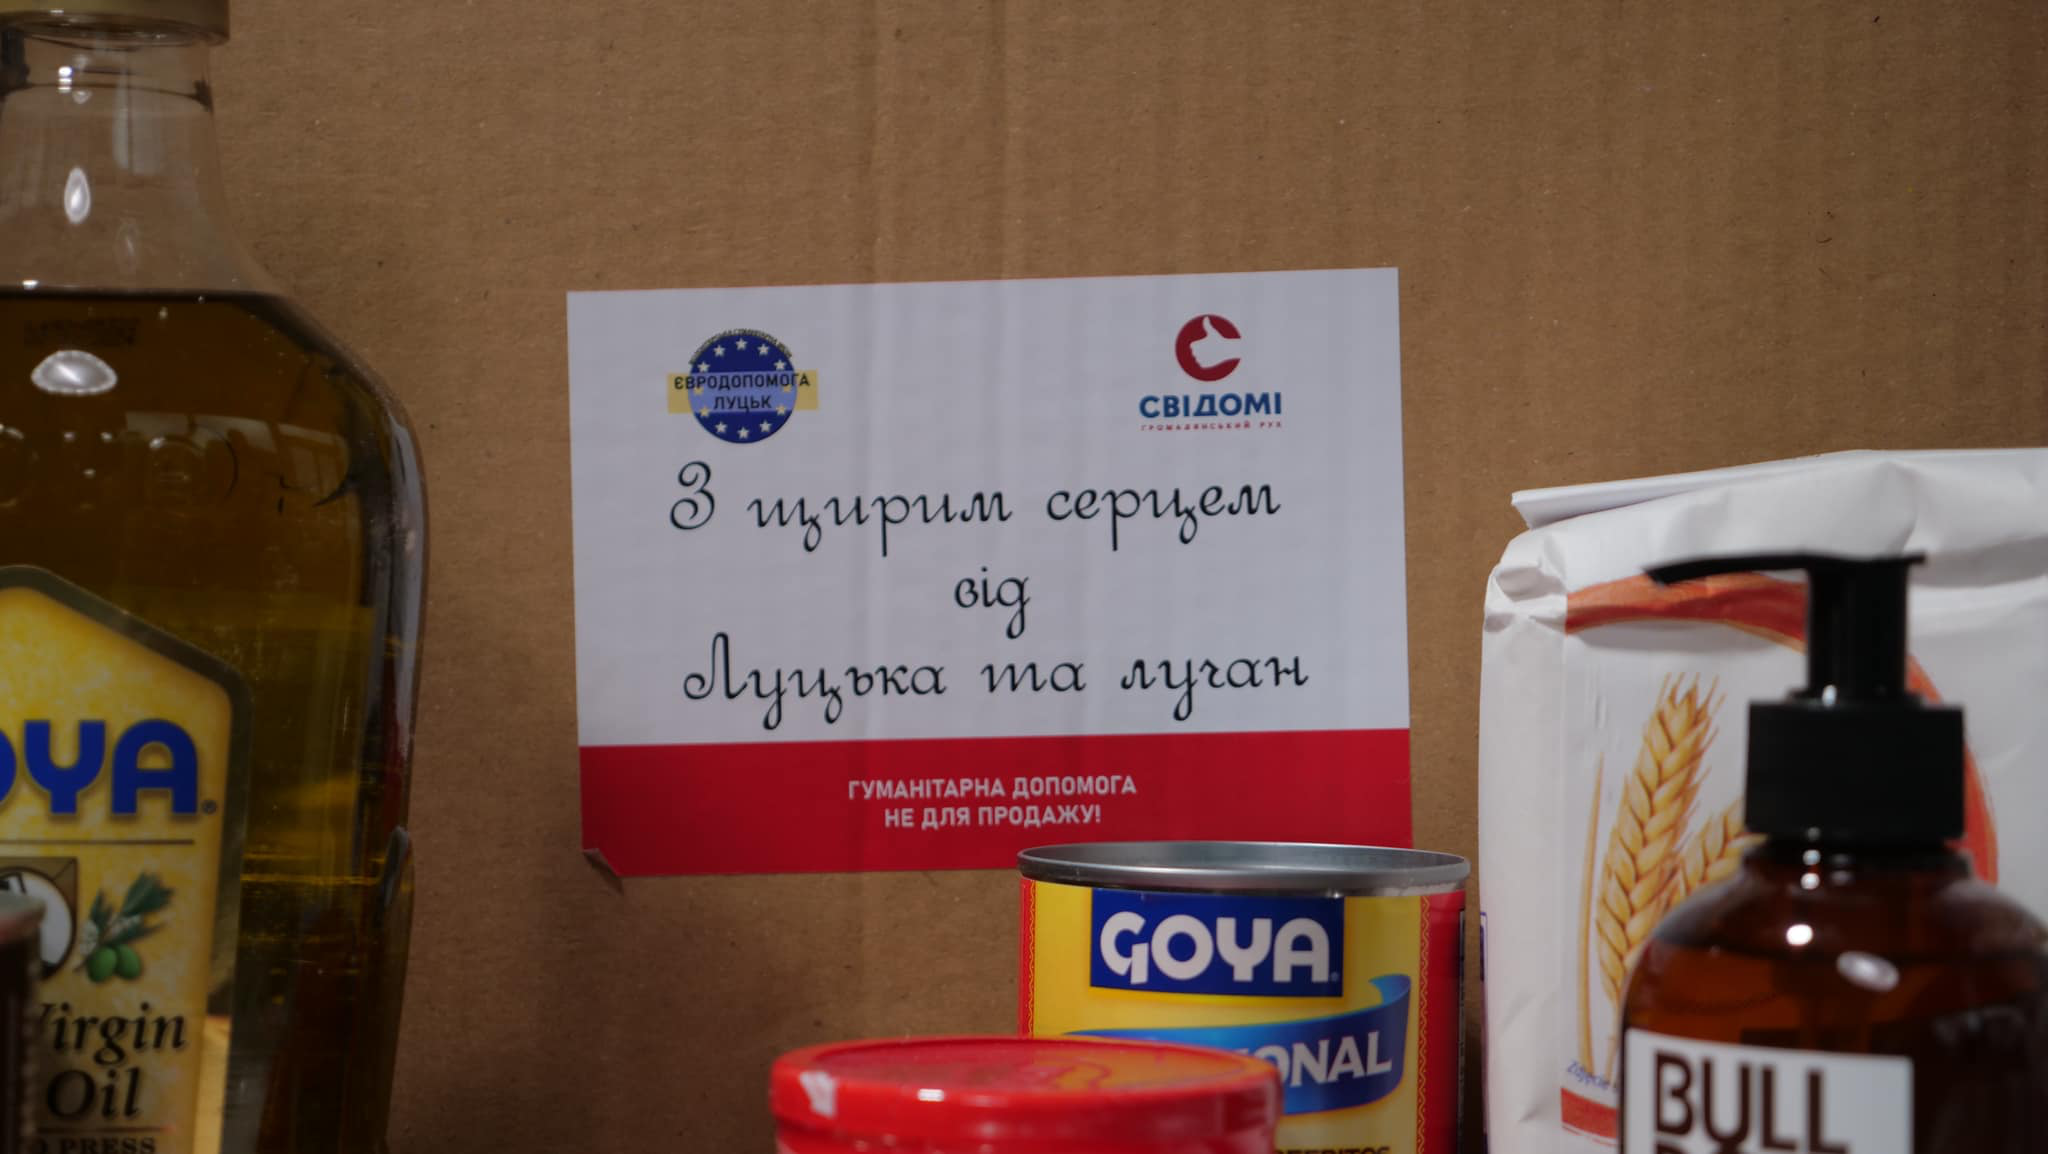 Формують «сімейні пакунки»: «Свідомі» відправили гумдопомогу в різні куточки України (фото, відео)